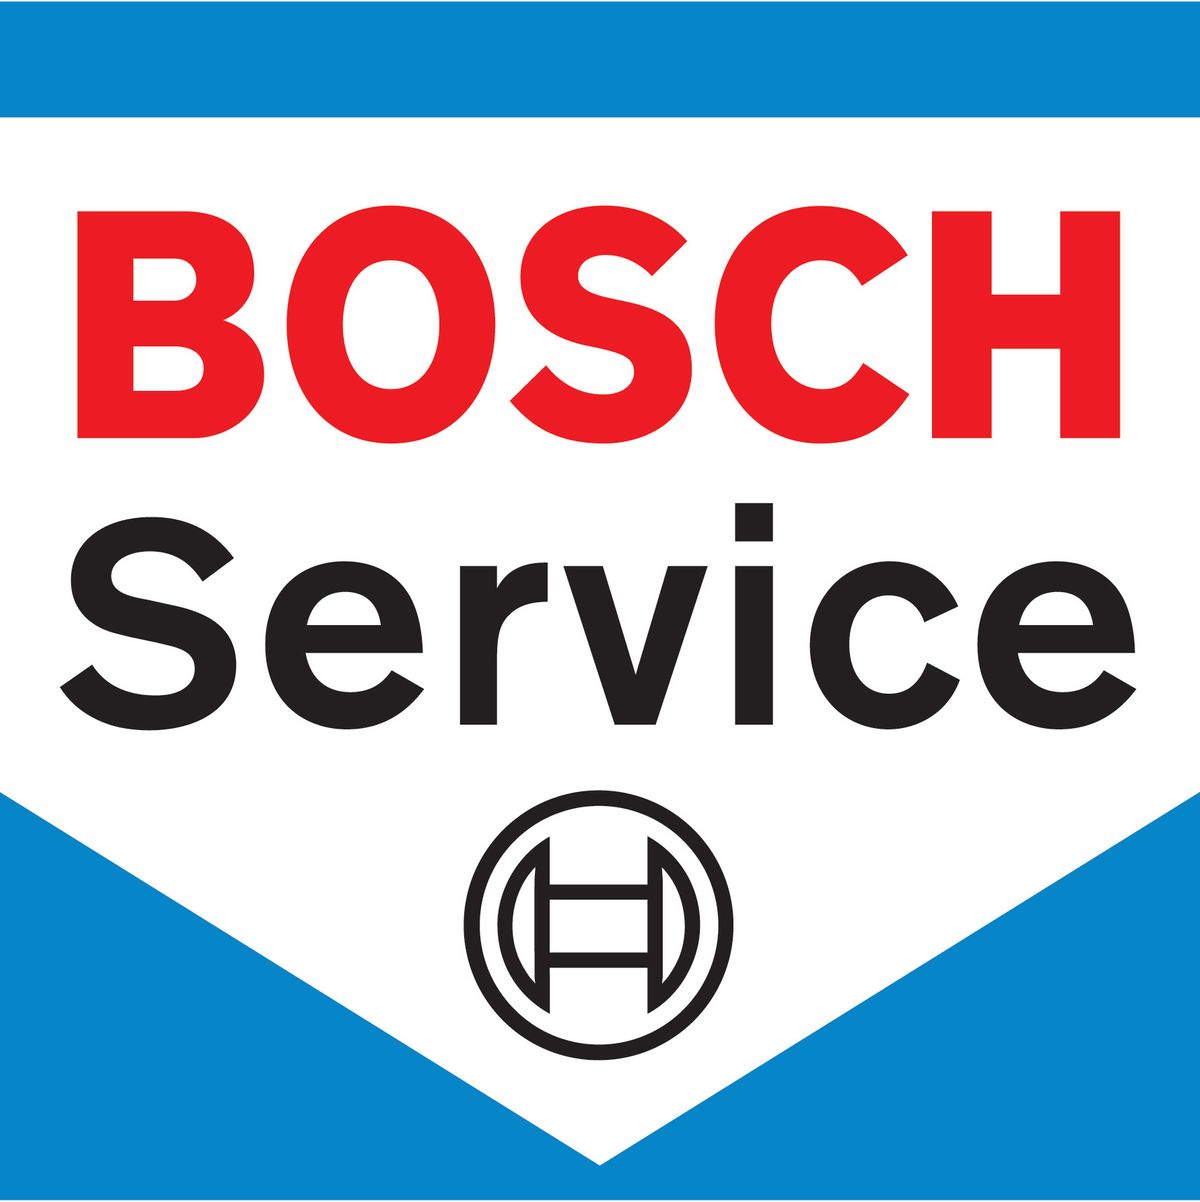 Auto Becker, Bosch Service, Herne, Werkstatt, Reifenservice, Inspektion, Reparatur, Autocheck, Wartung, KFZ, Auto, Fahrzeug, PKW, Logo, Bosch